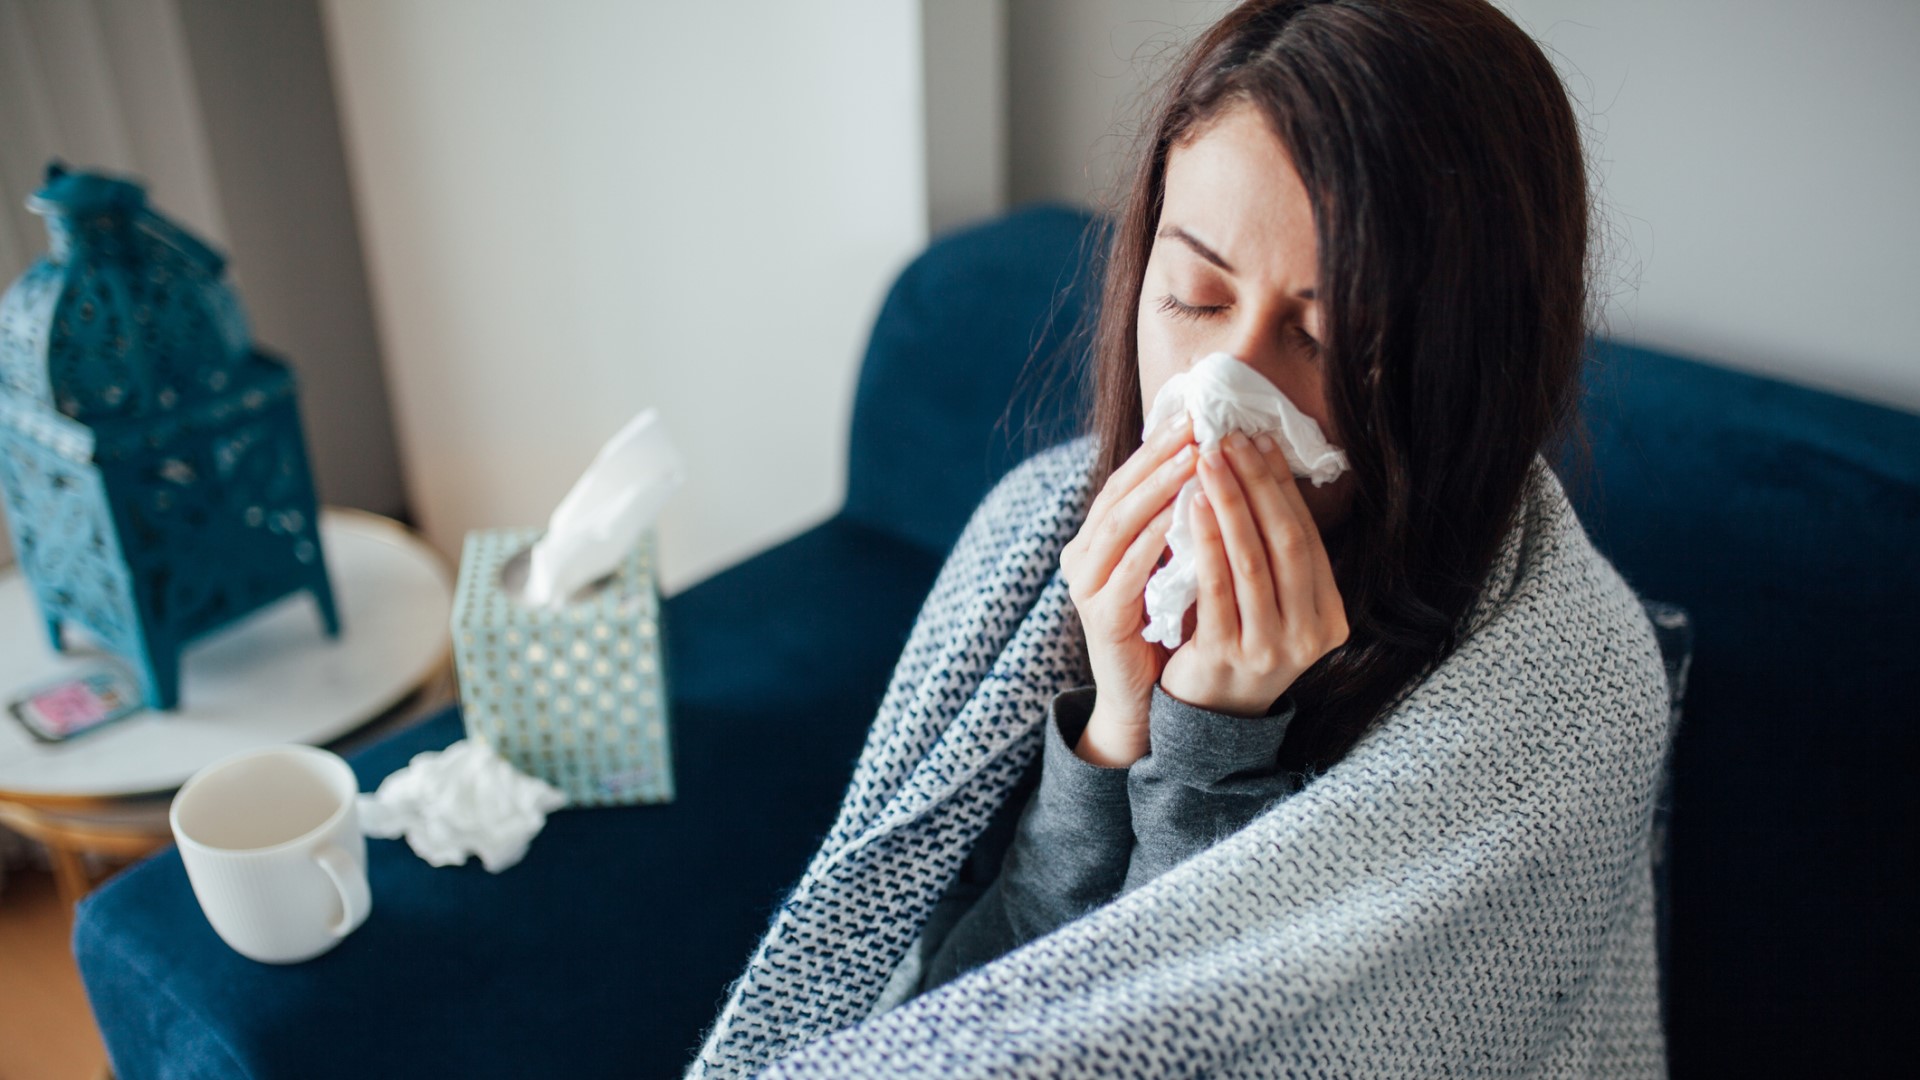 26.chřipka a rýma se přenášejí v kolektivu